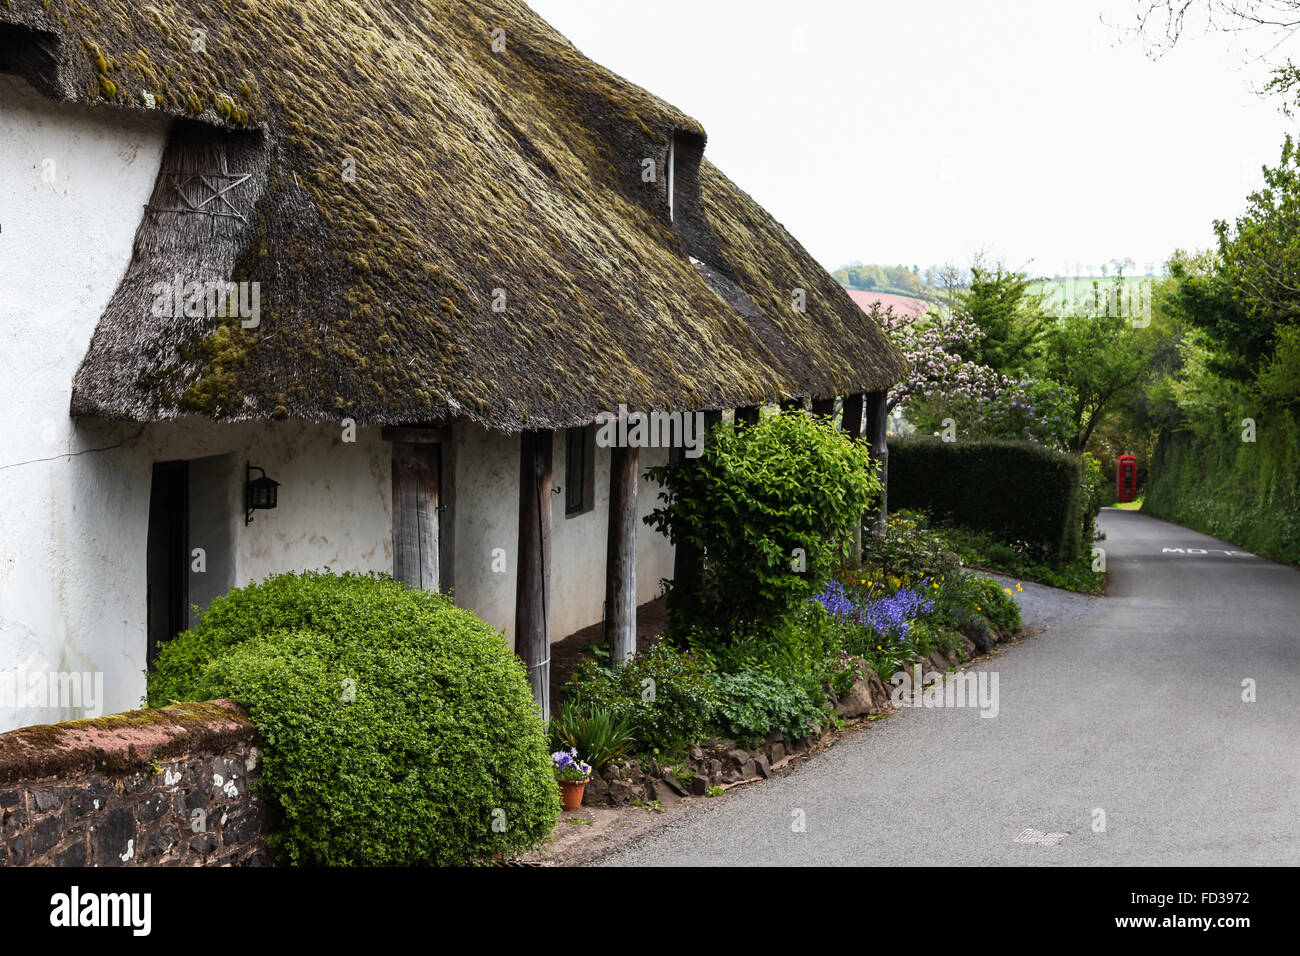 Dunchideock, Devon, UK, thatched cottage traditionnel téléphone cabine téléphonique rouge boîte Banque D'Images